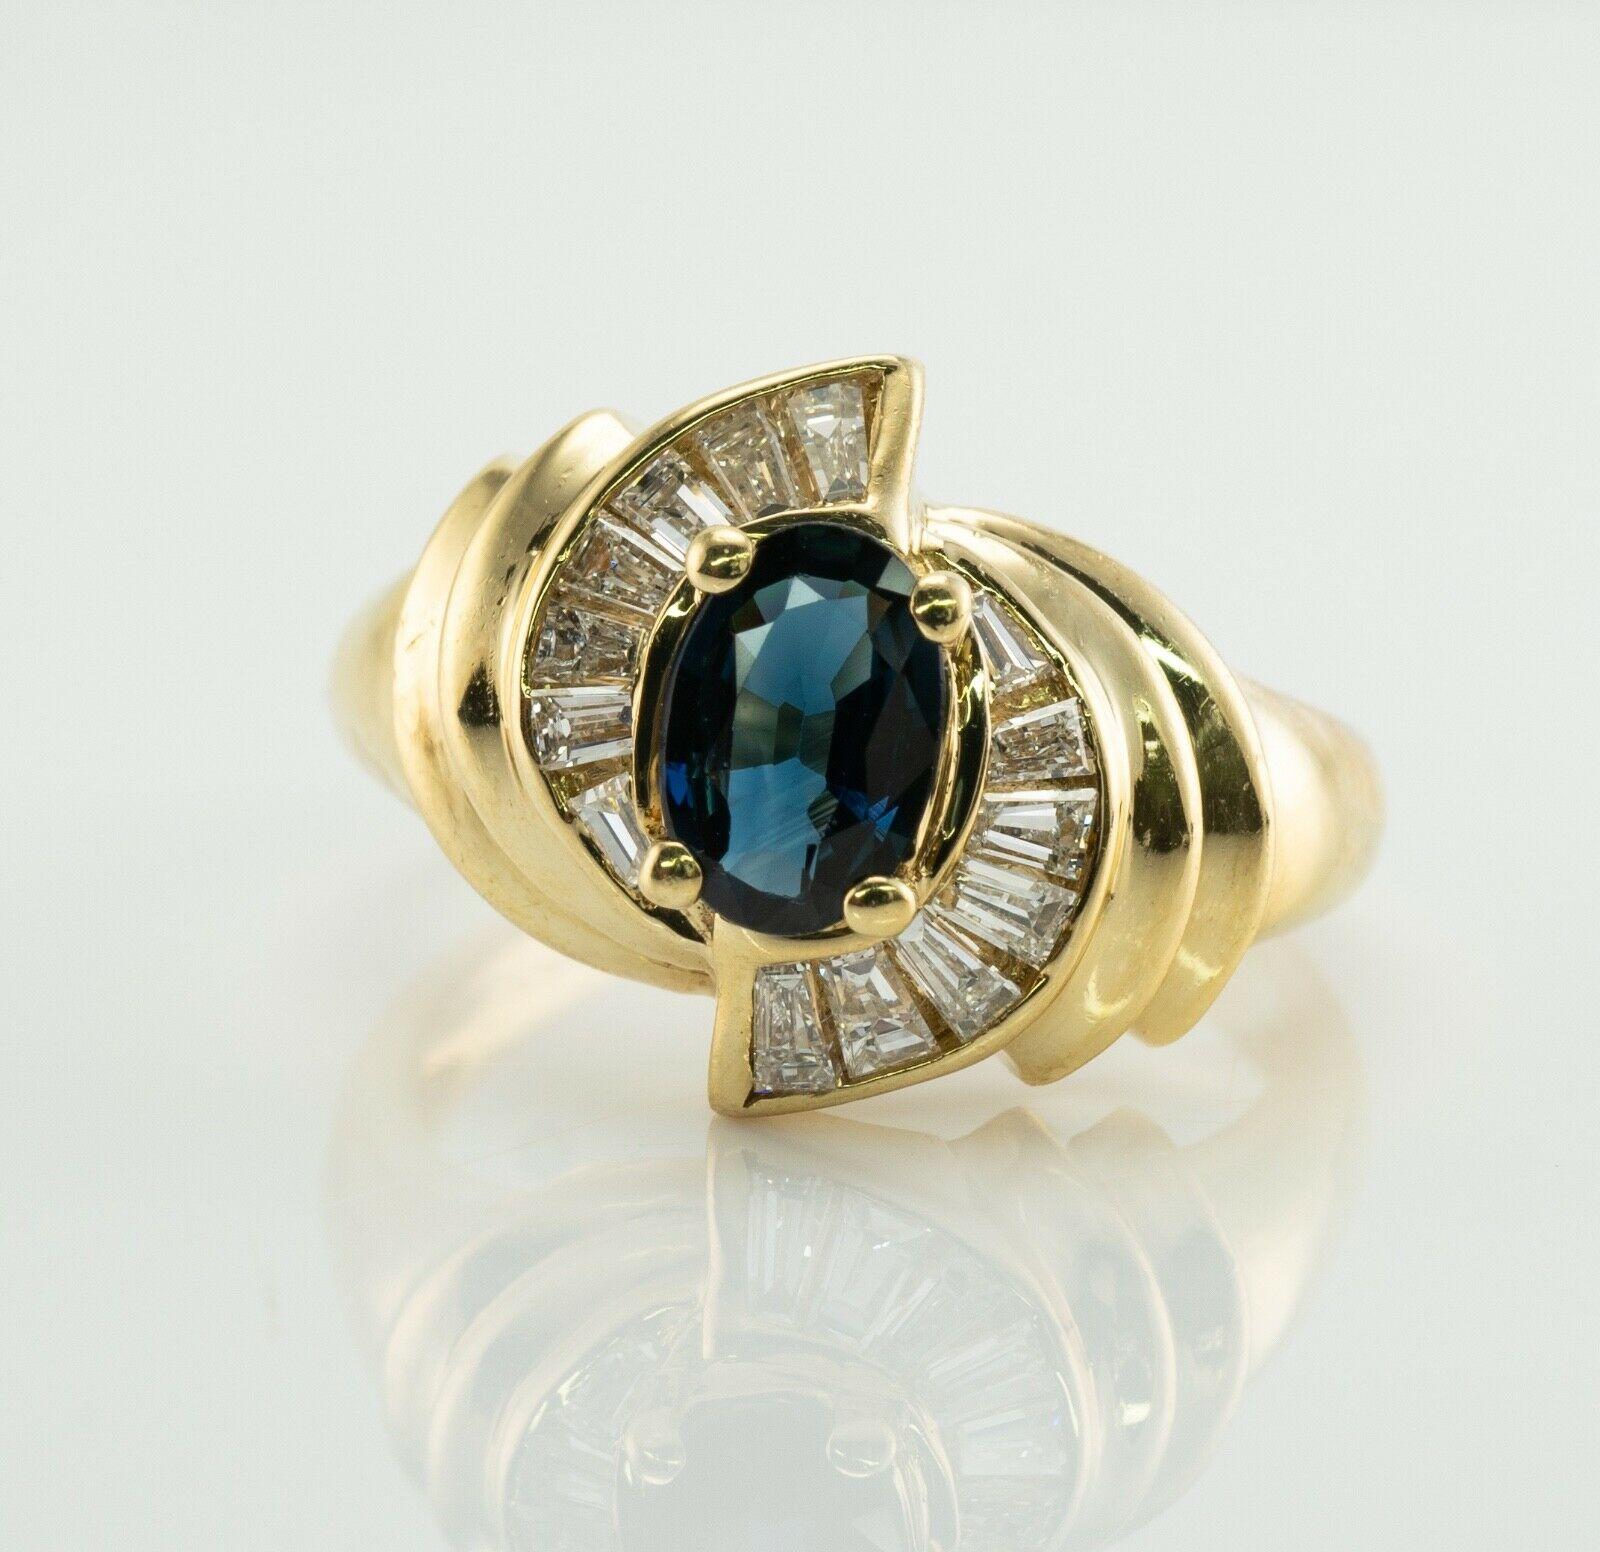 Dieses Anwesen Ring ist fein in Handarbeit in massivem 14K Gelbgold und mit natürlichen Erde abgebaut Saphiren und Diamanten. 
Der zentrale oval geschliffene blaue Saphir misst 7 x 5 mm (1,00 Karat). 
Dies ist ein sauberes Juwel von großer